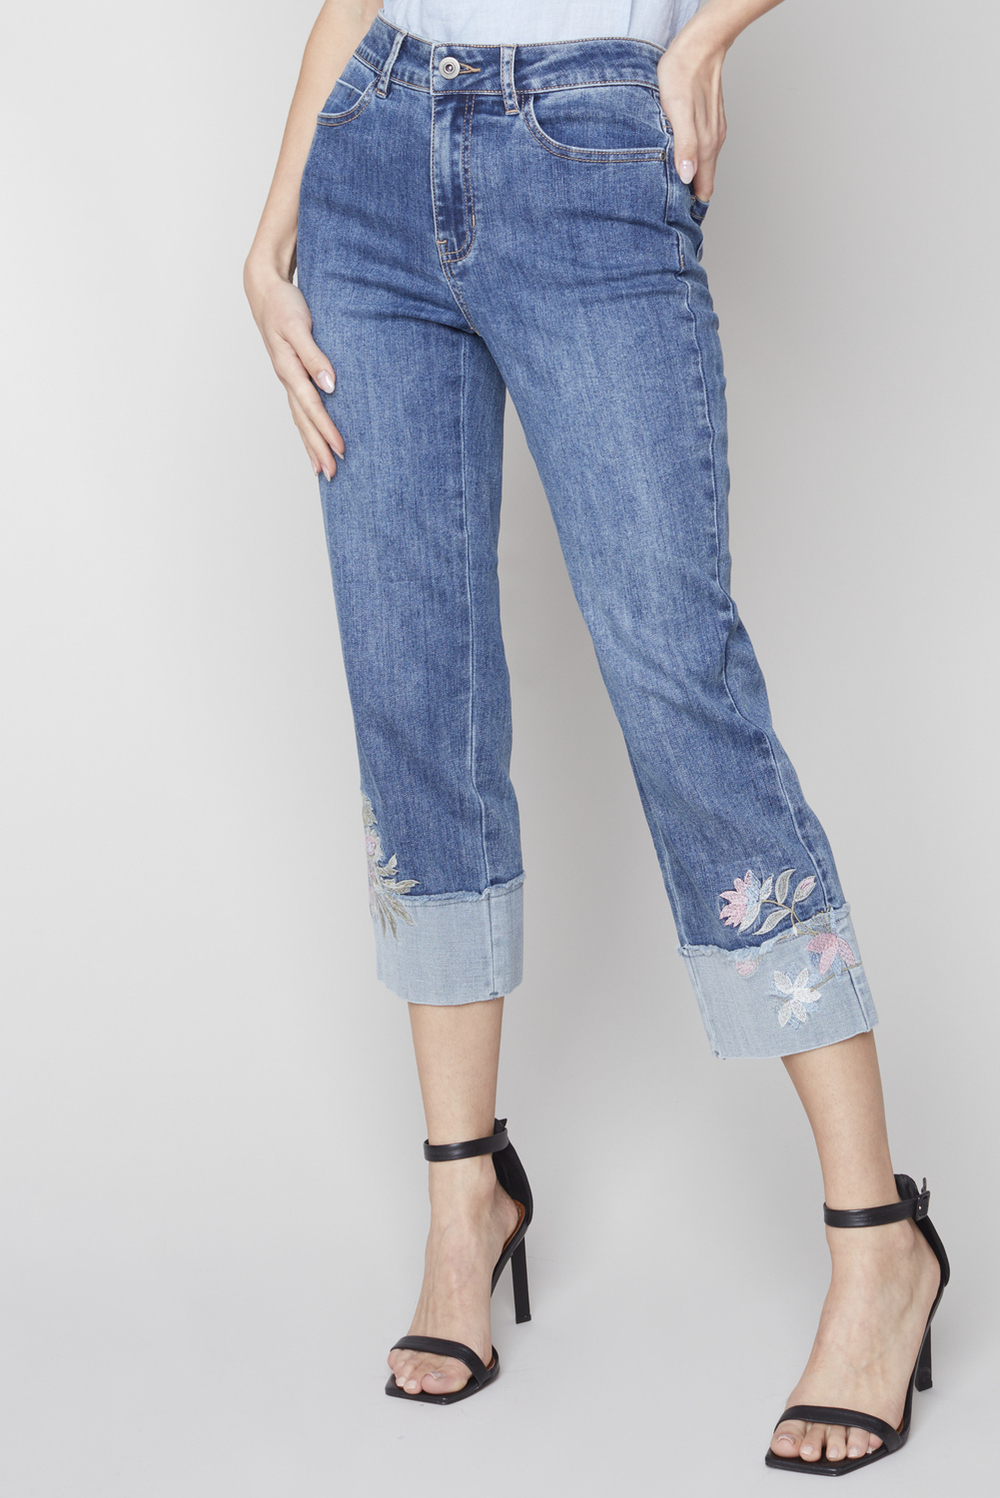 Jeans à manchettes brodées Style C5399. Medium Blue